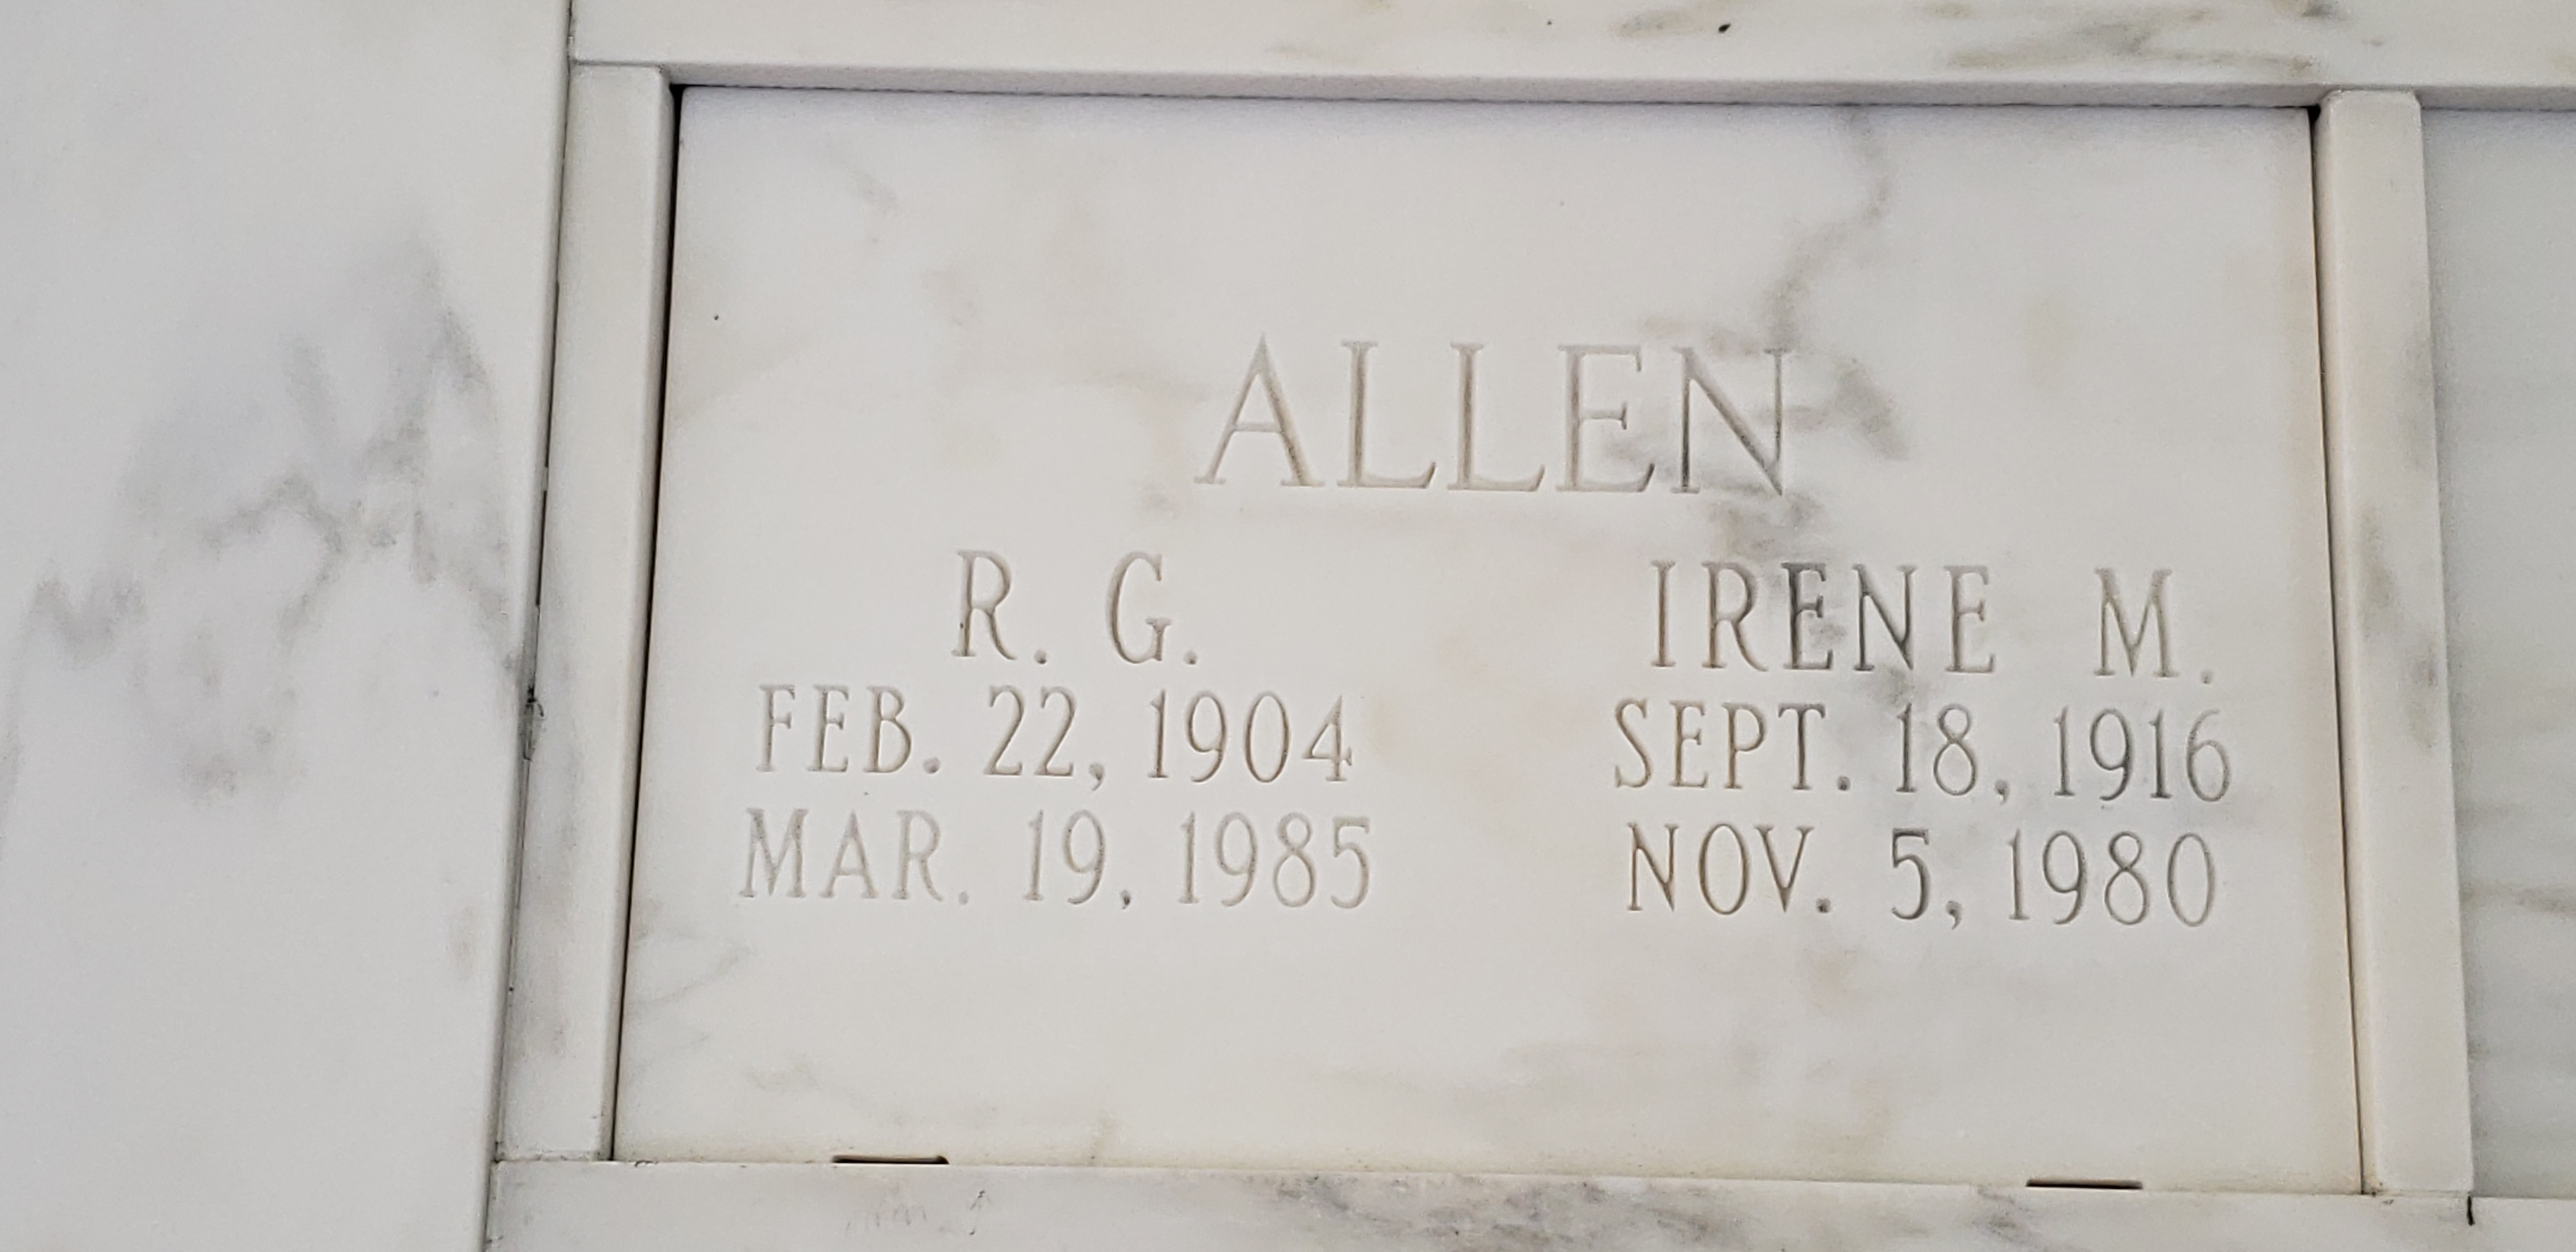 R G Allen